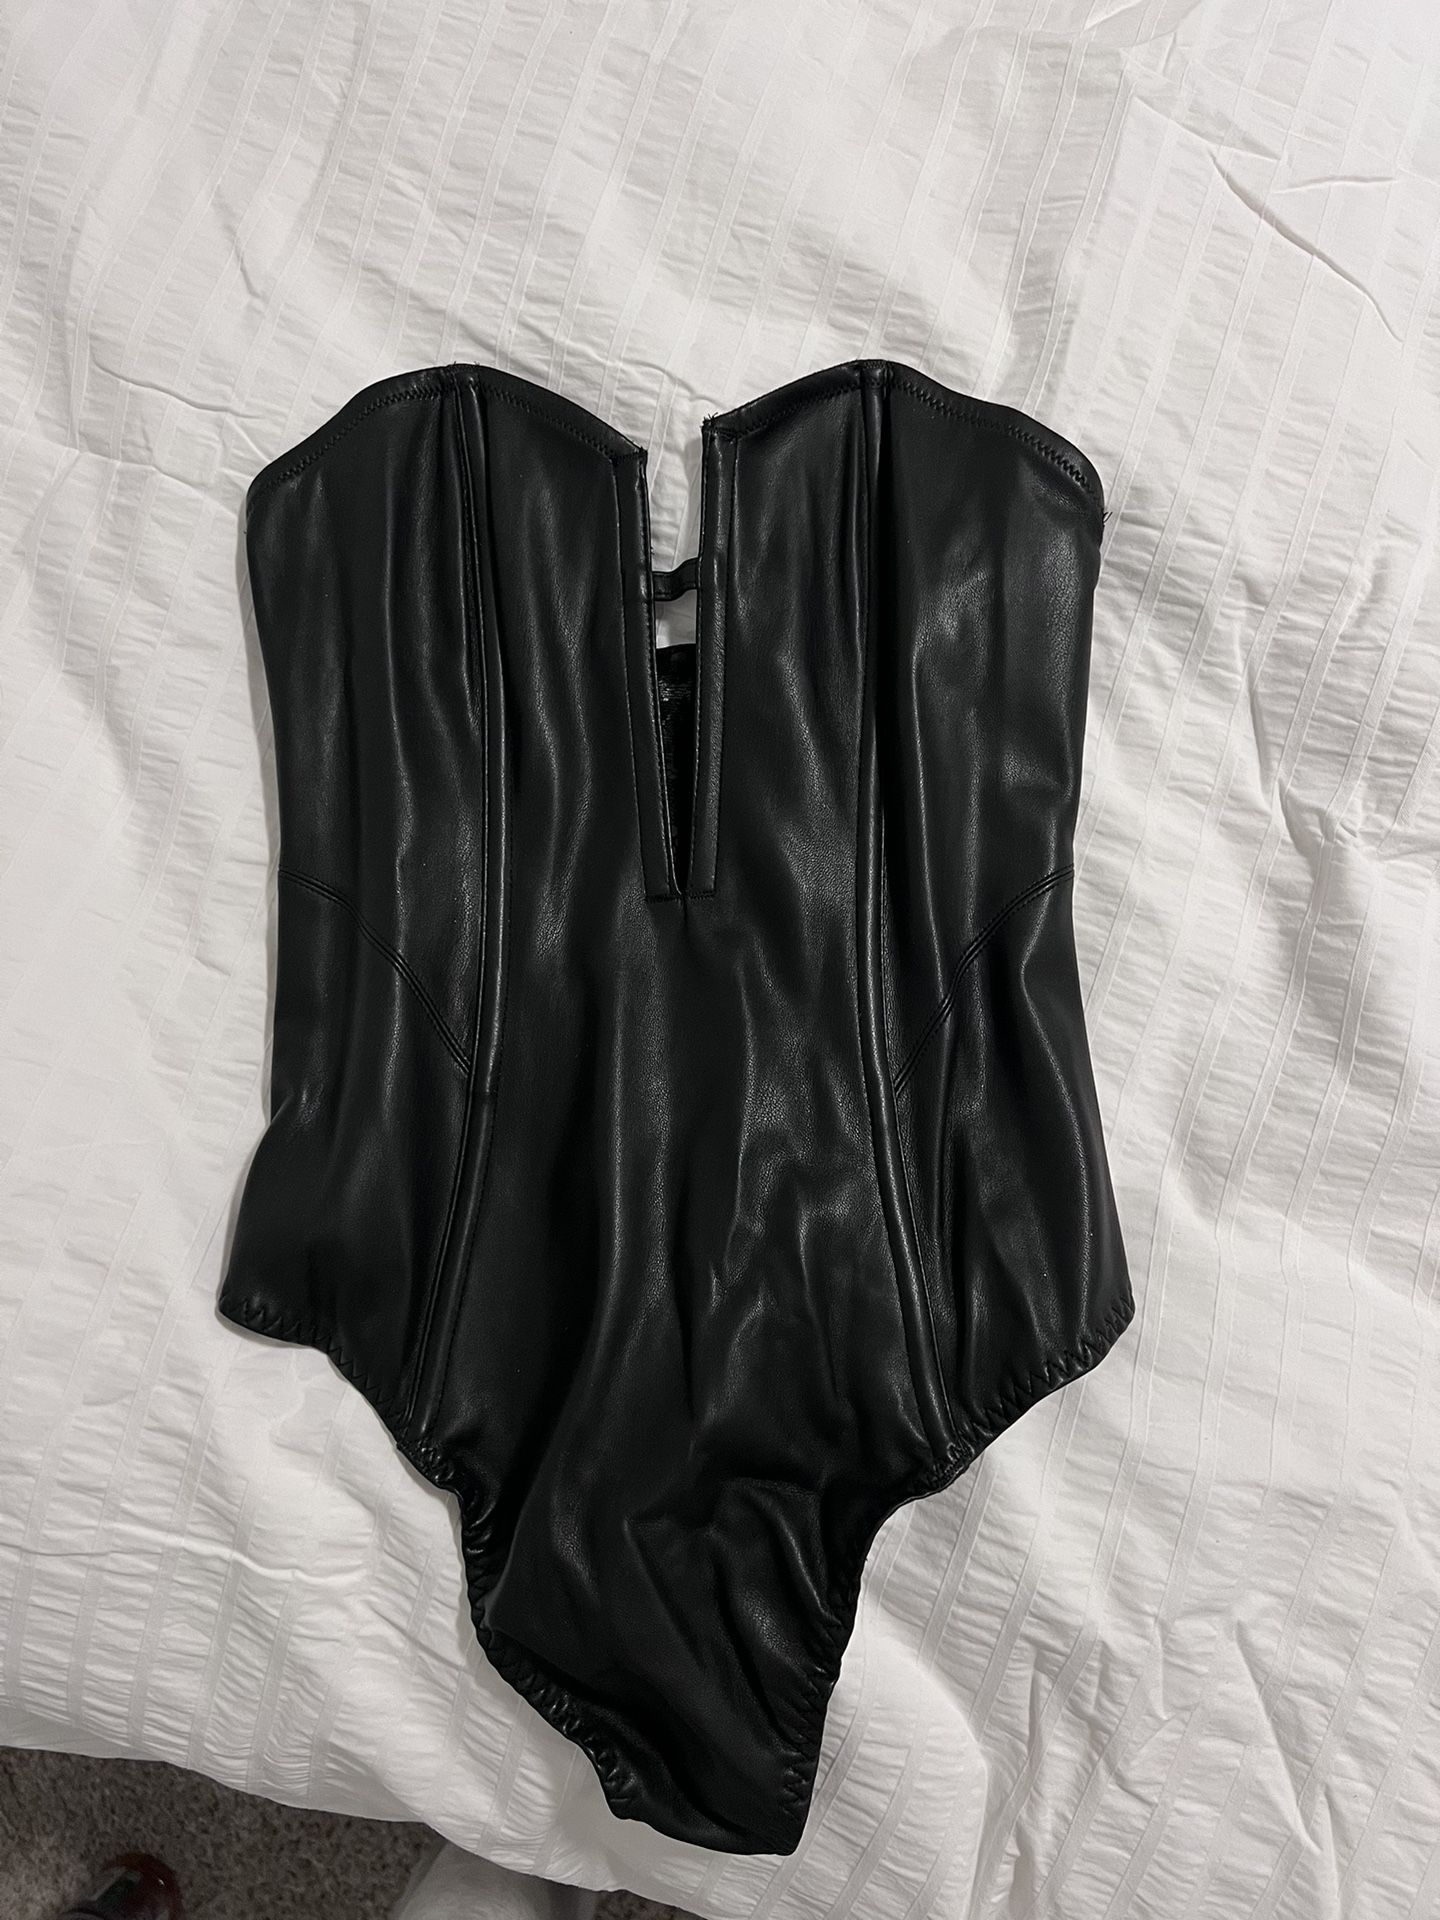 Victoria’s Secret Faux leather corset/ bodysuit